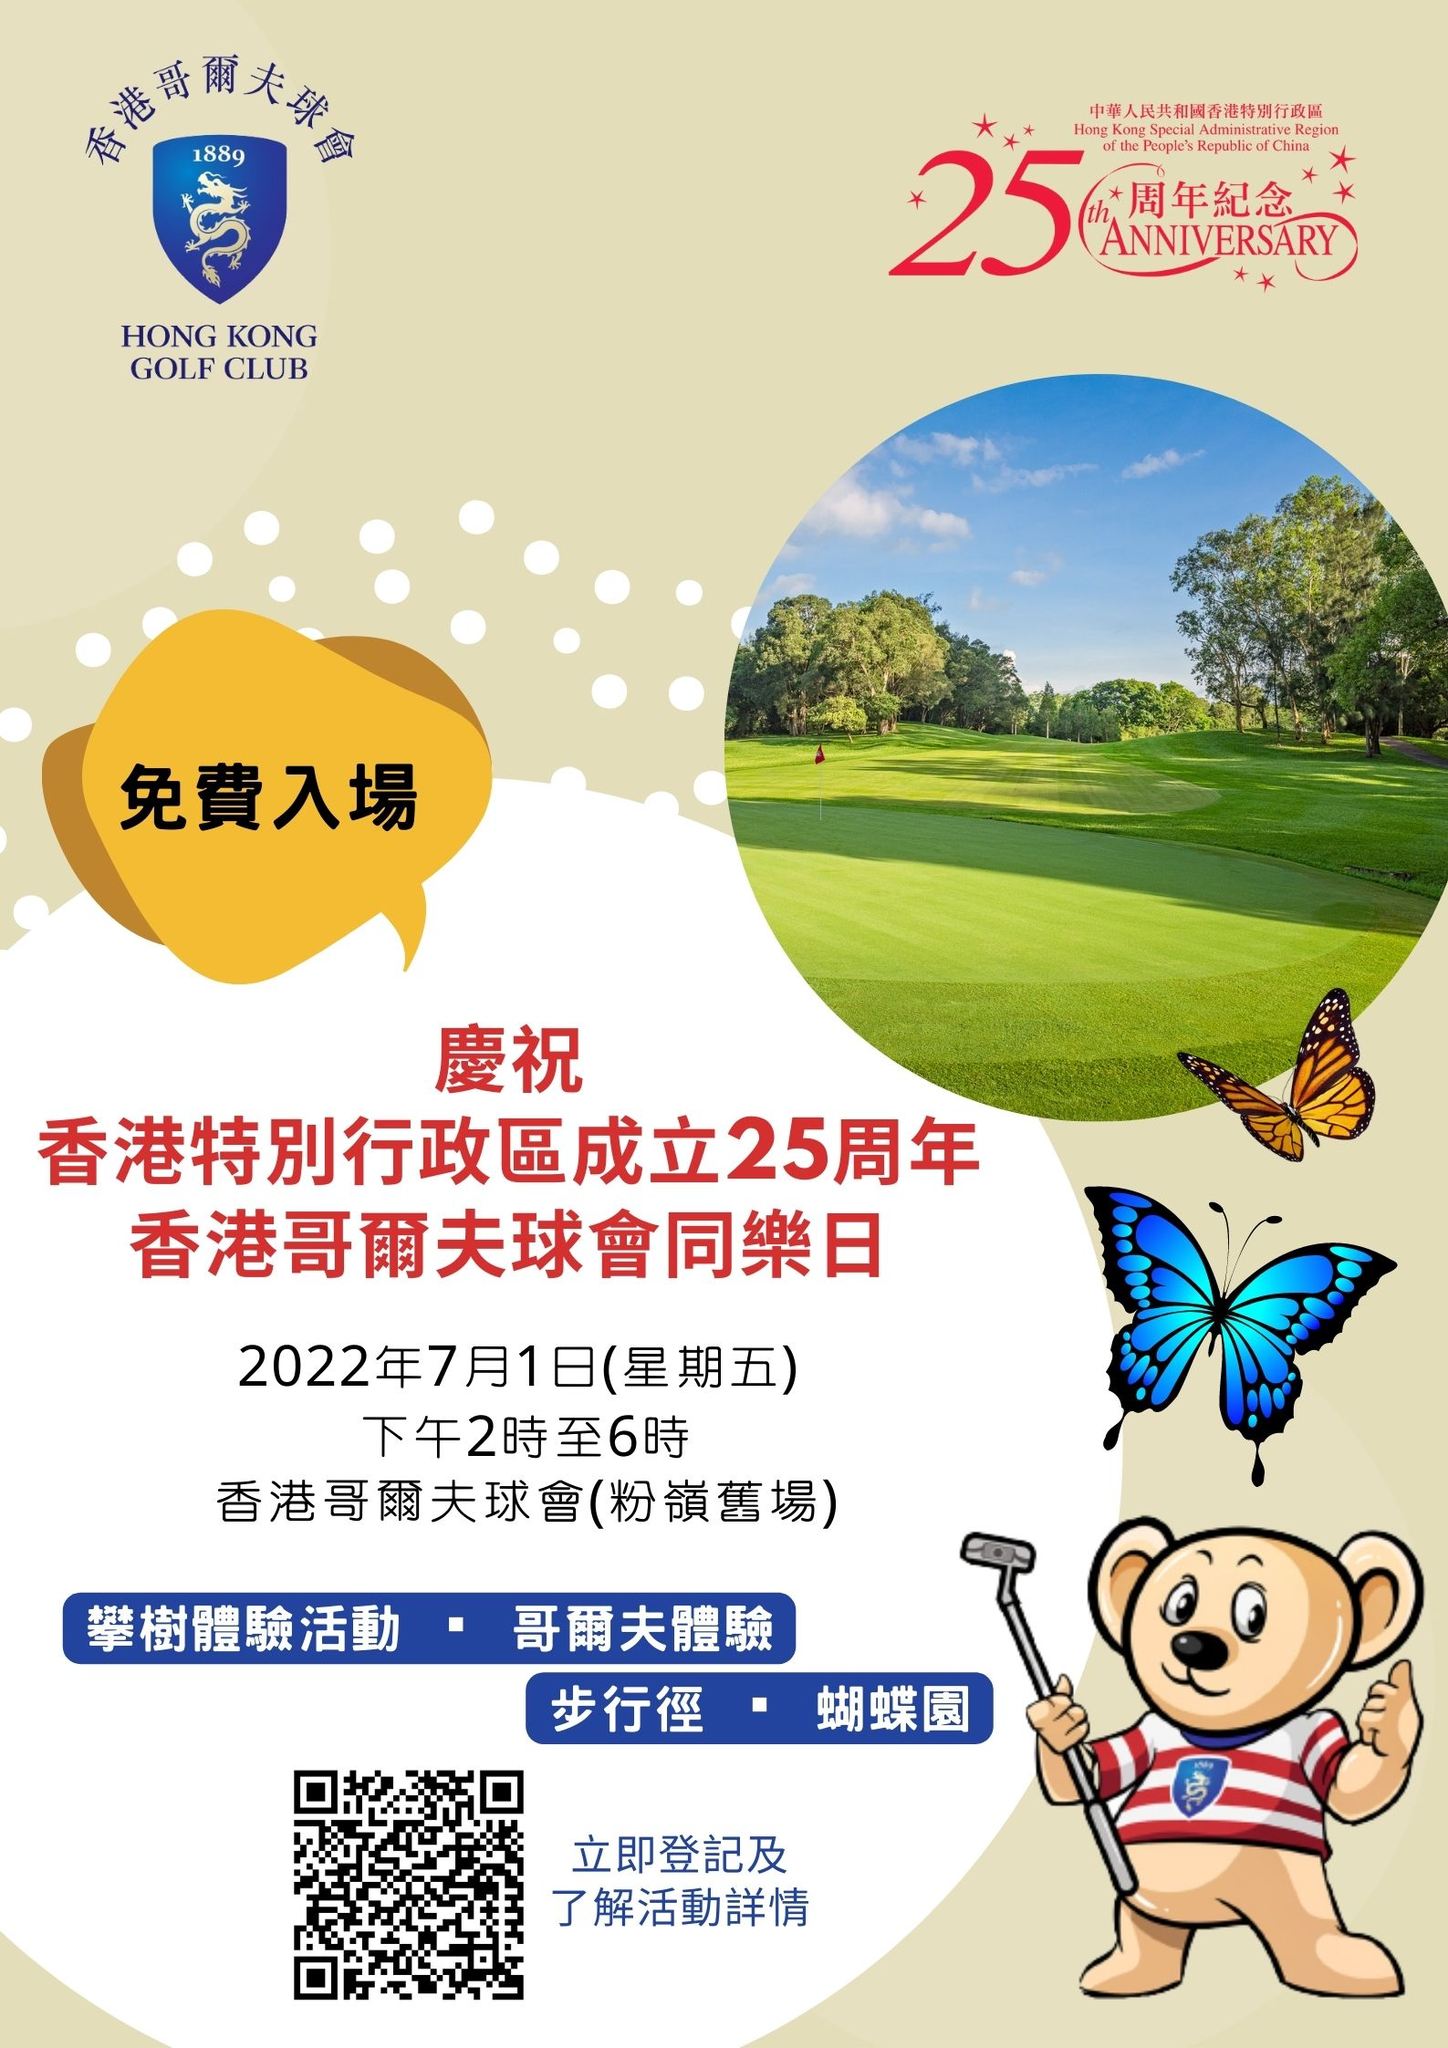 免費參加 7月1日 香港哥爾夫球會同樂日 免費獲贈球會禮物